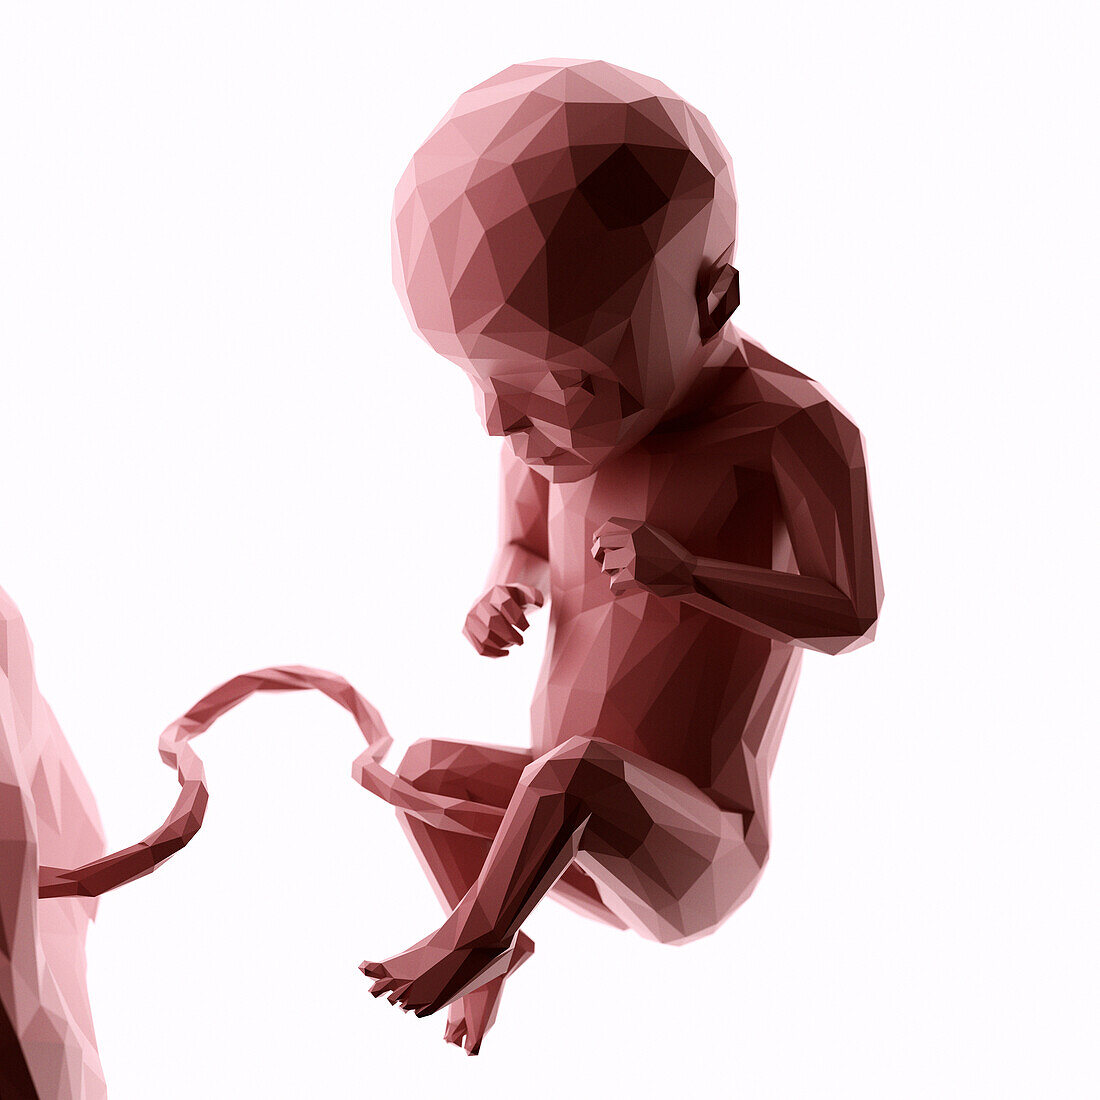 Human fetus at week 29, abstract illustration